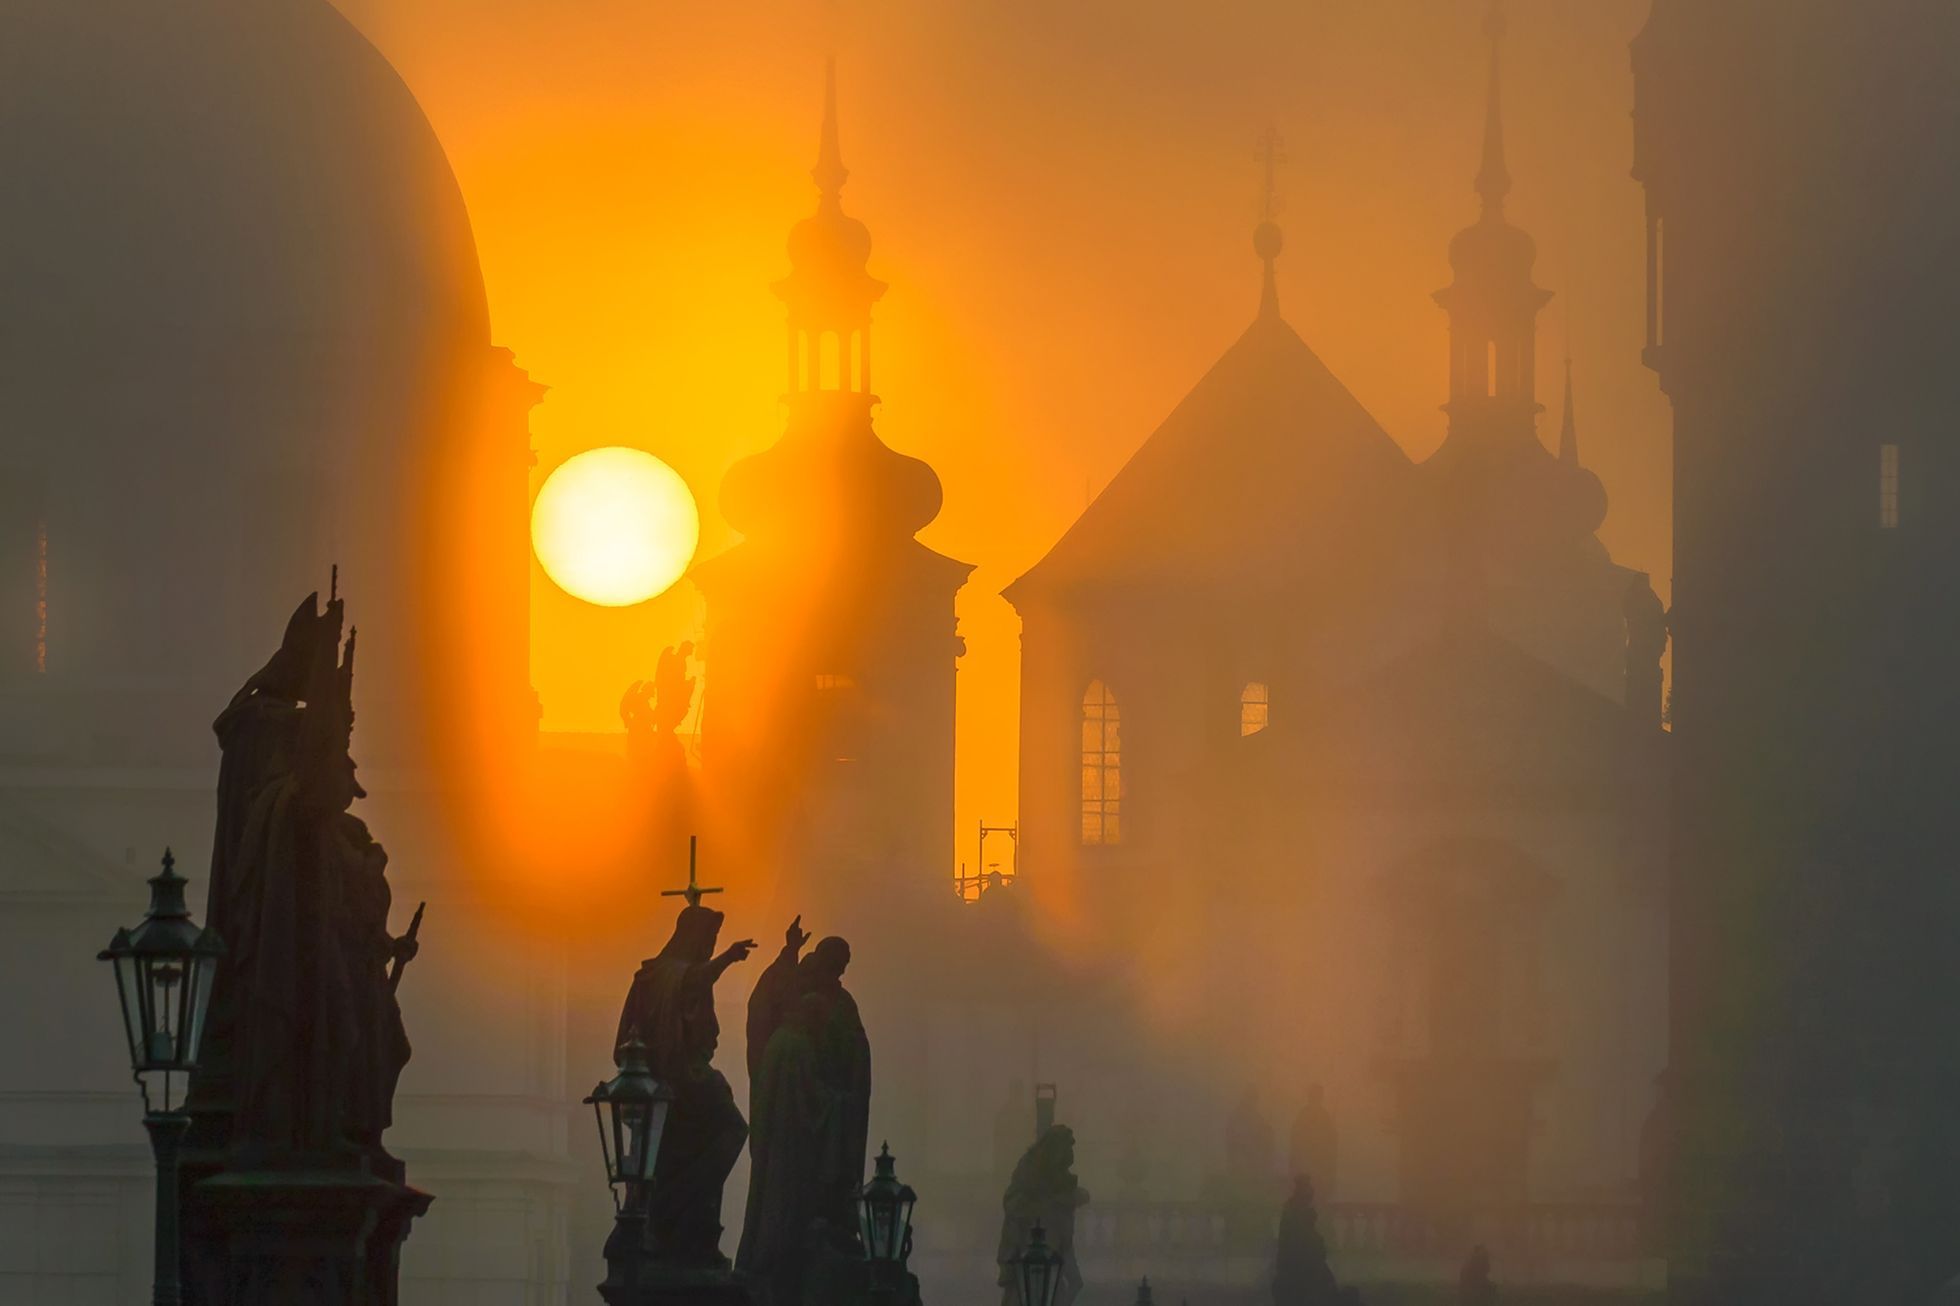 Tajemná Praha. Pokud ji chcete vidět v plné kráse, musíte si přivstat, říká fotograf Richard Horák